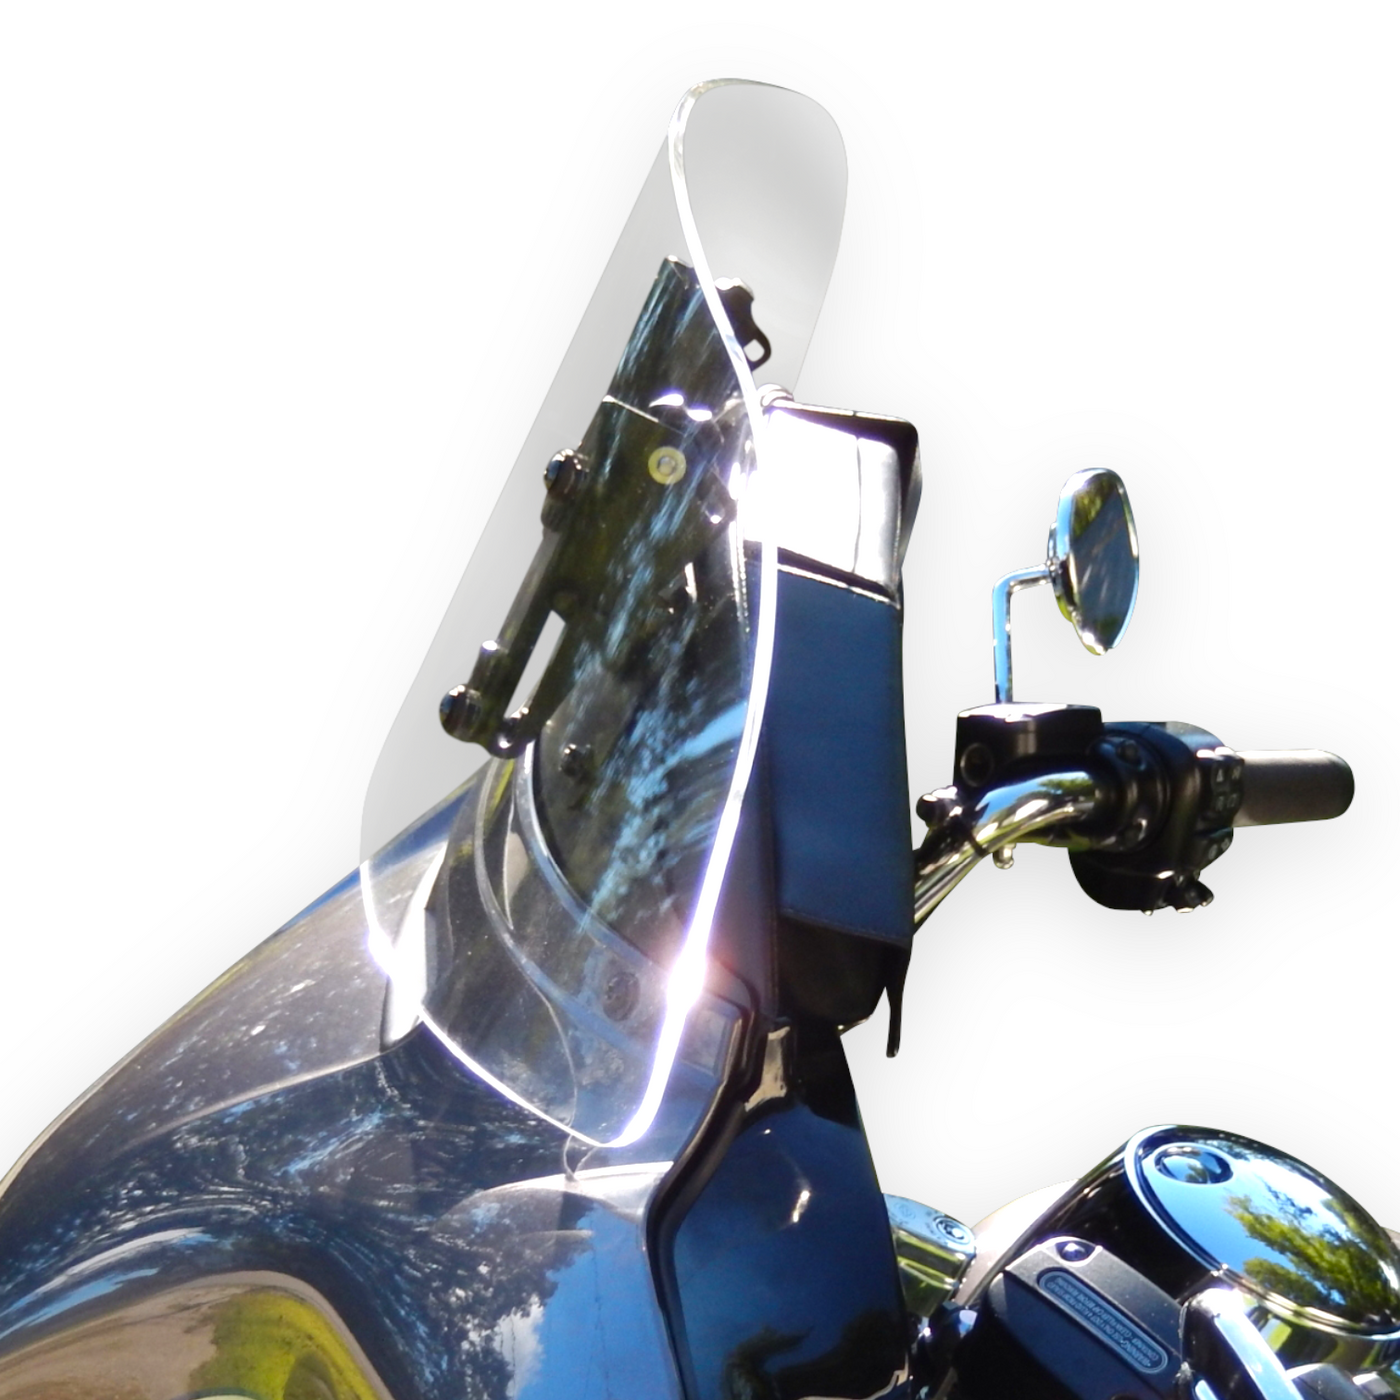 Adjustable Windshield System for Harley-Davidson Batwing Fairing FLHT/FLHX (2014 - 2023)